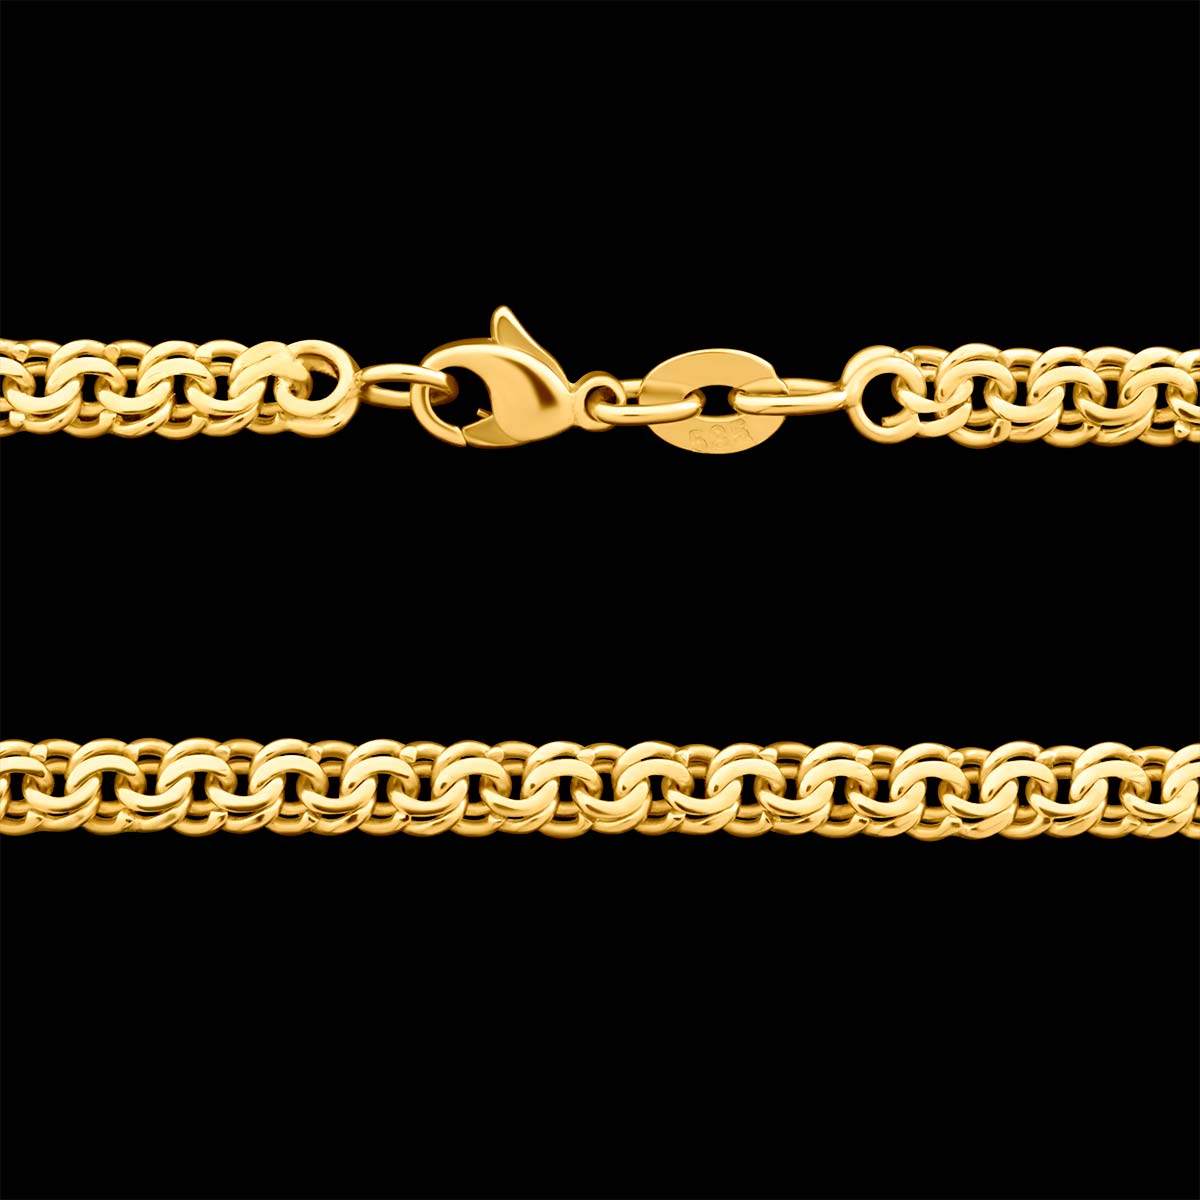 Garibaldiketten aus Gold, Silber und Edelstahl Online kaufen.